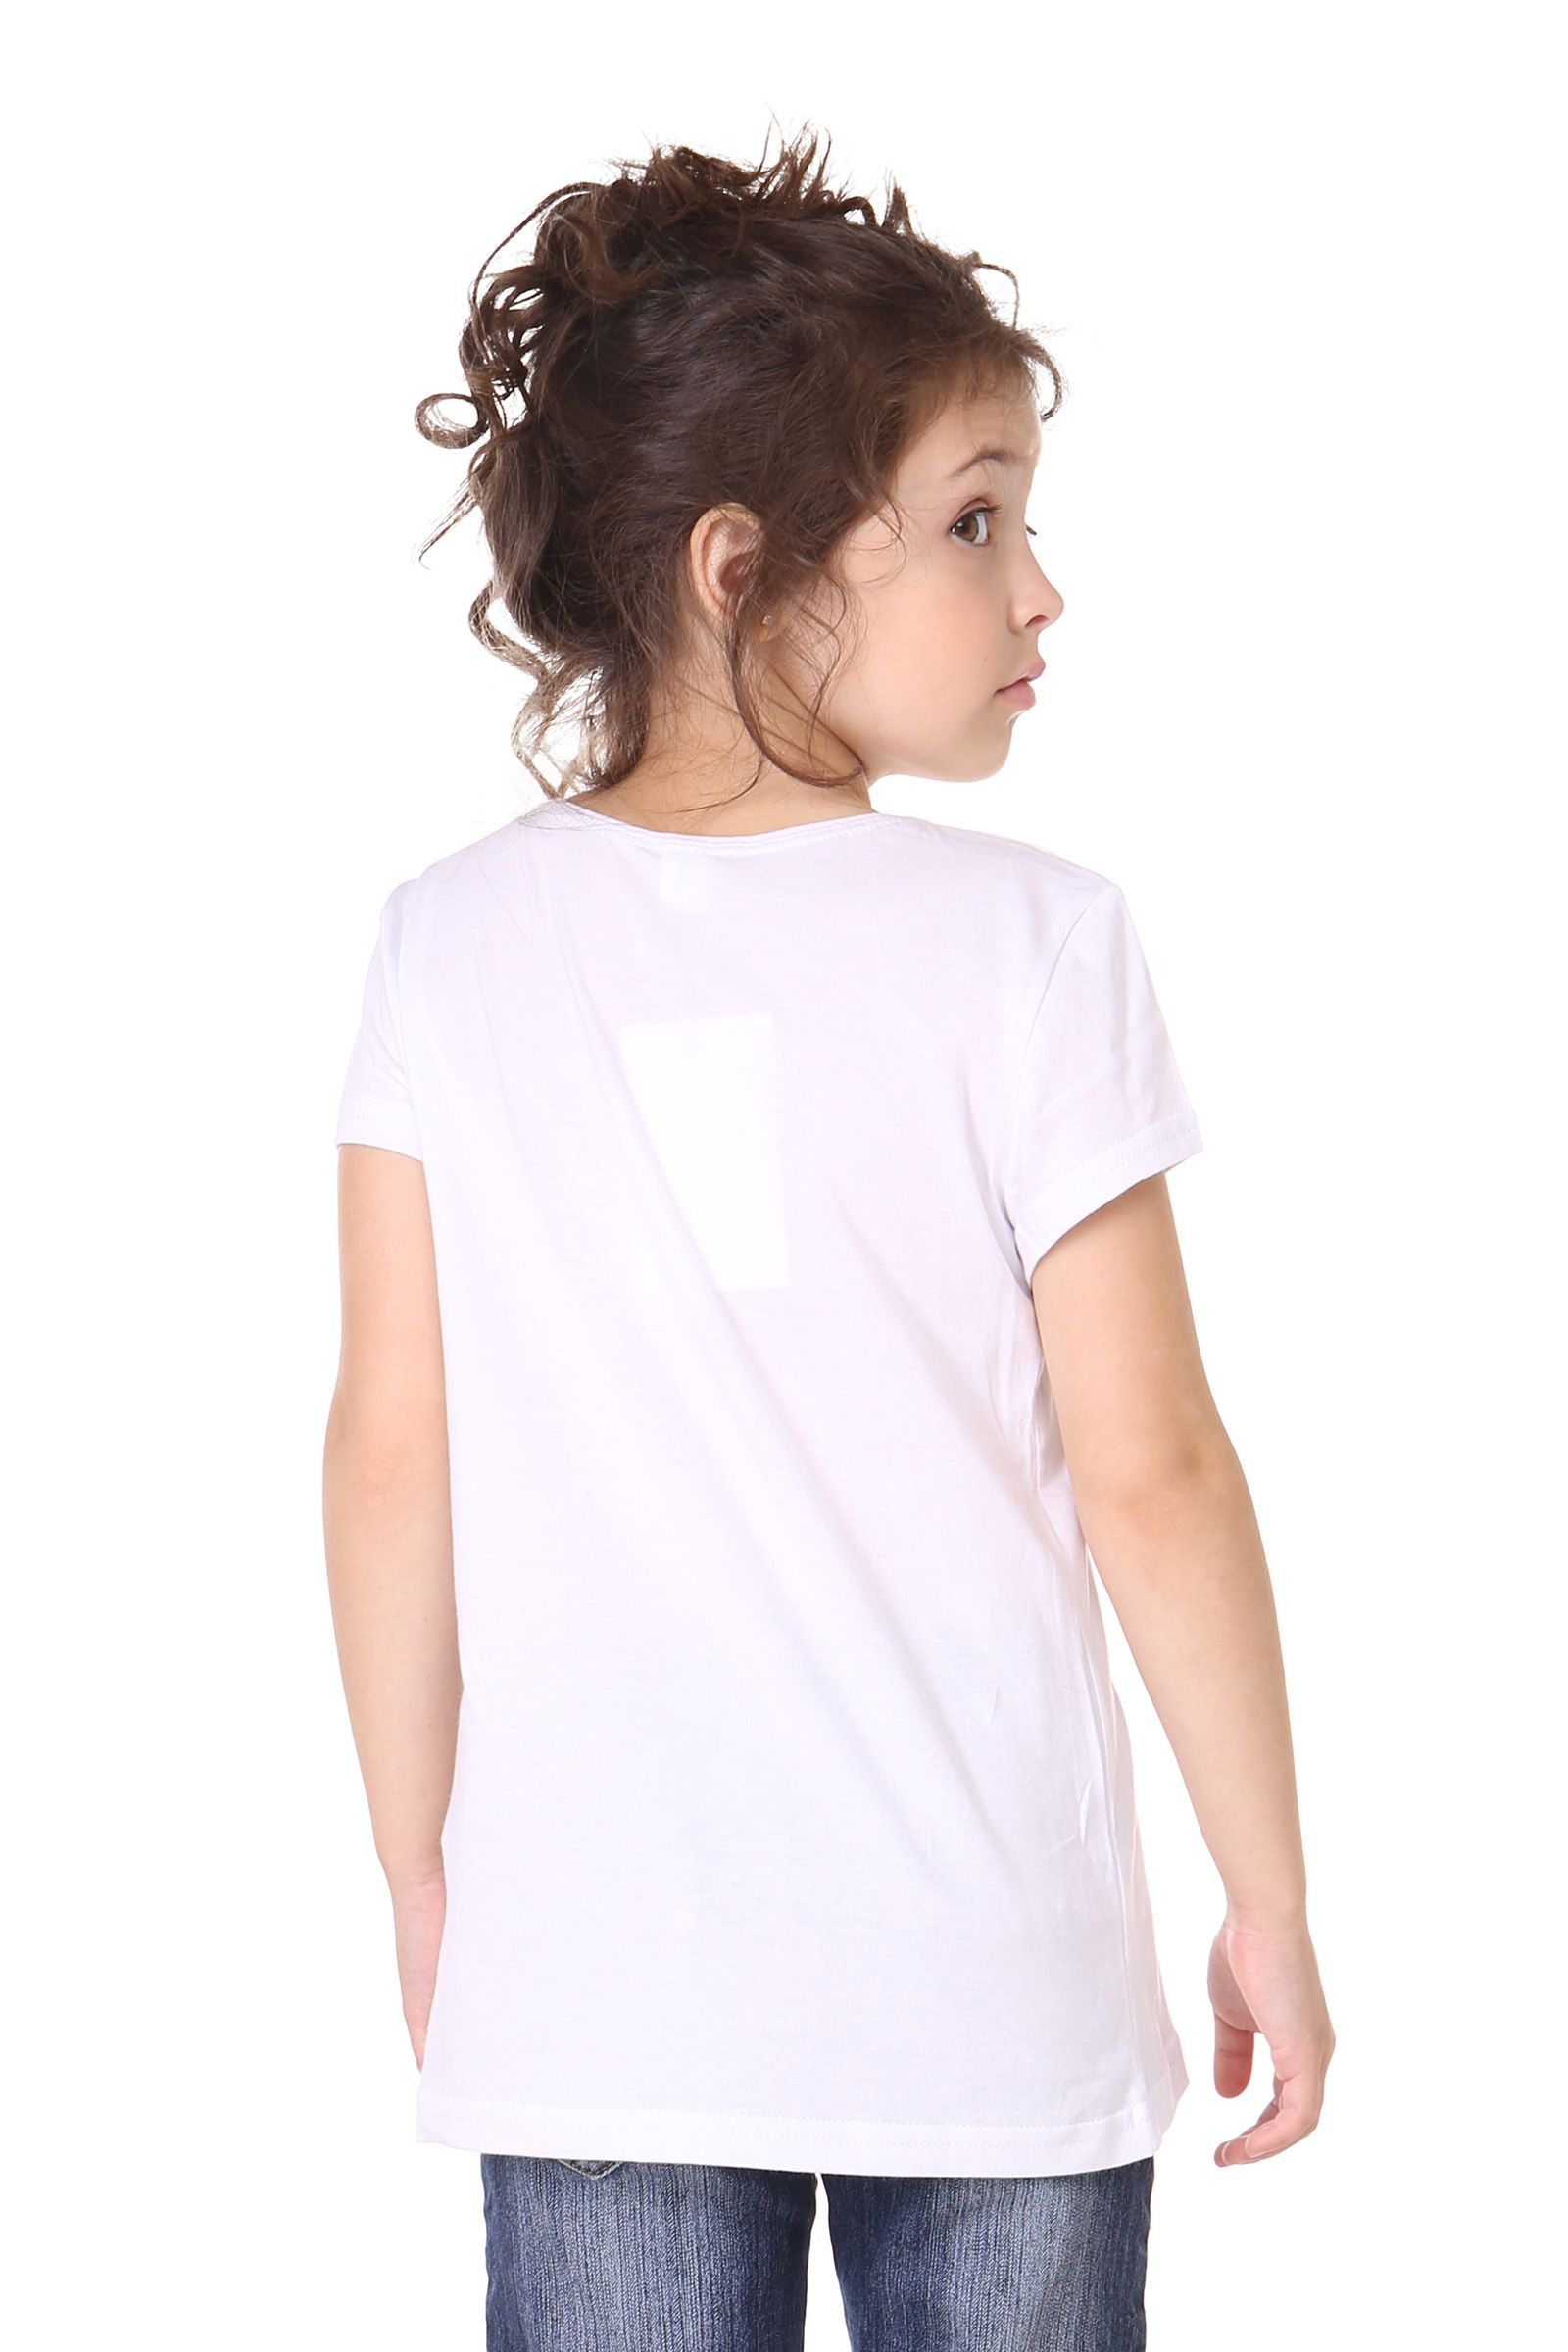 Джемпер-ДЖ02-3976 оптом от производителя детской одежды 'Алёна'